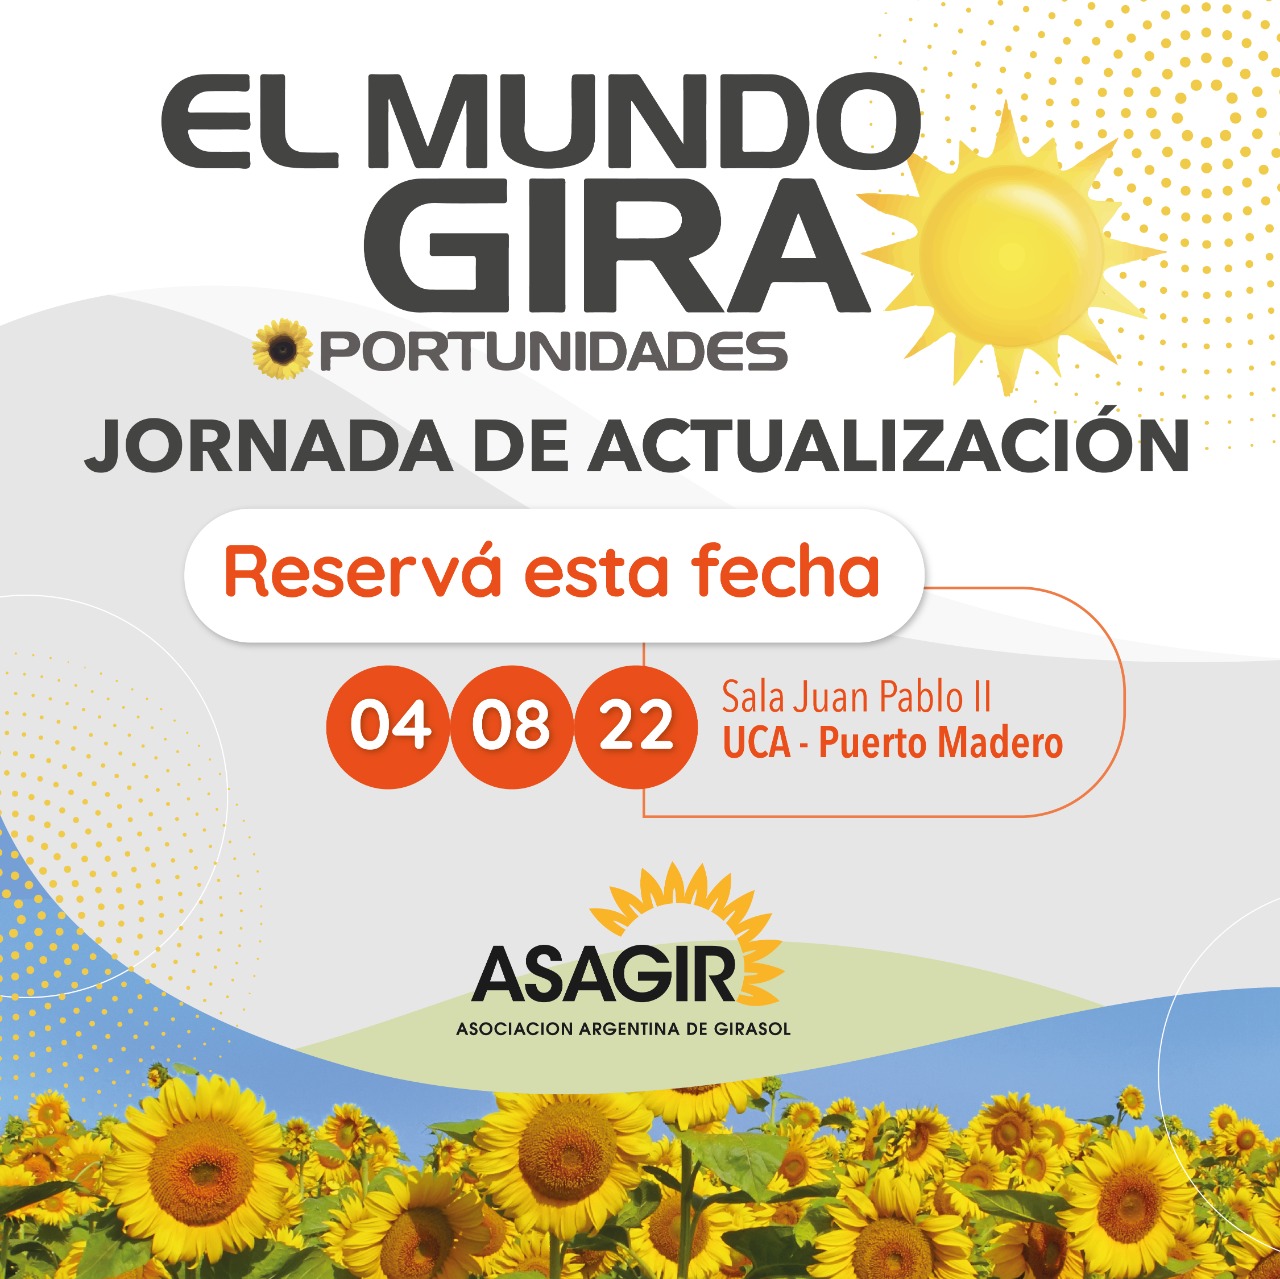 ASAGIR - Asociación Argentina de Girasol